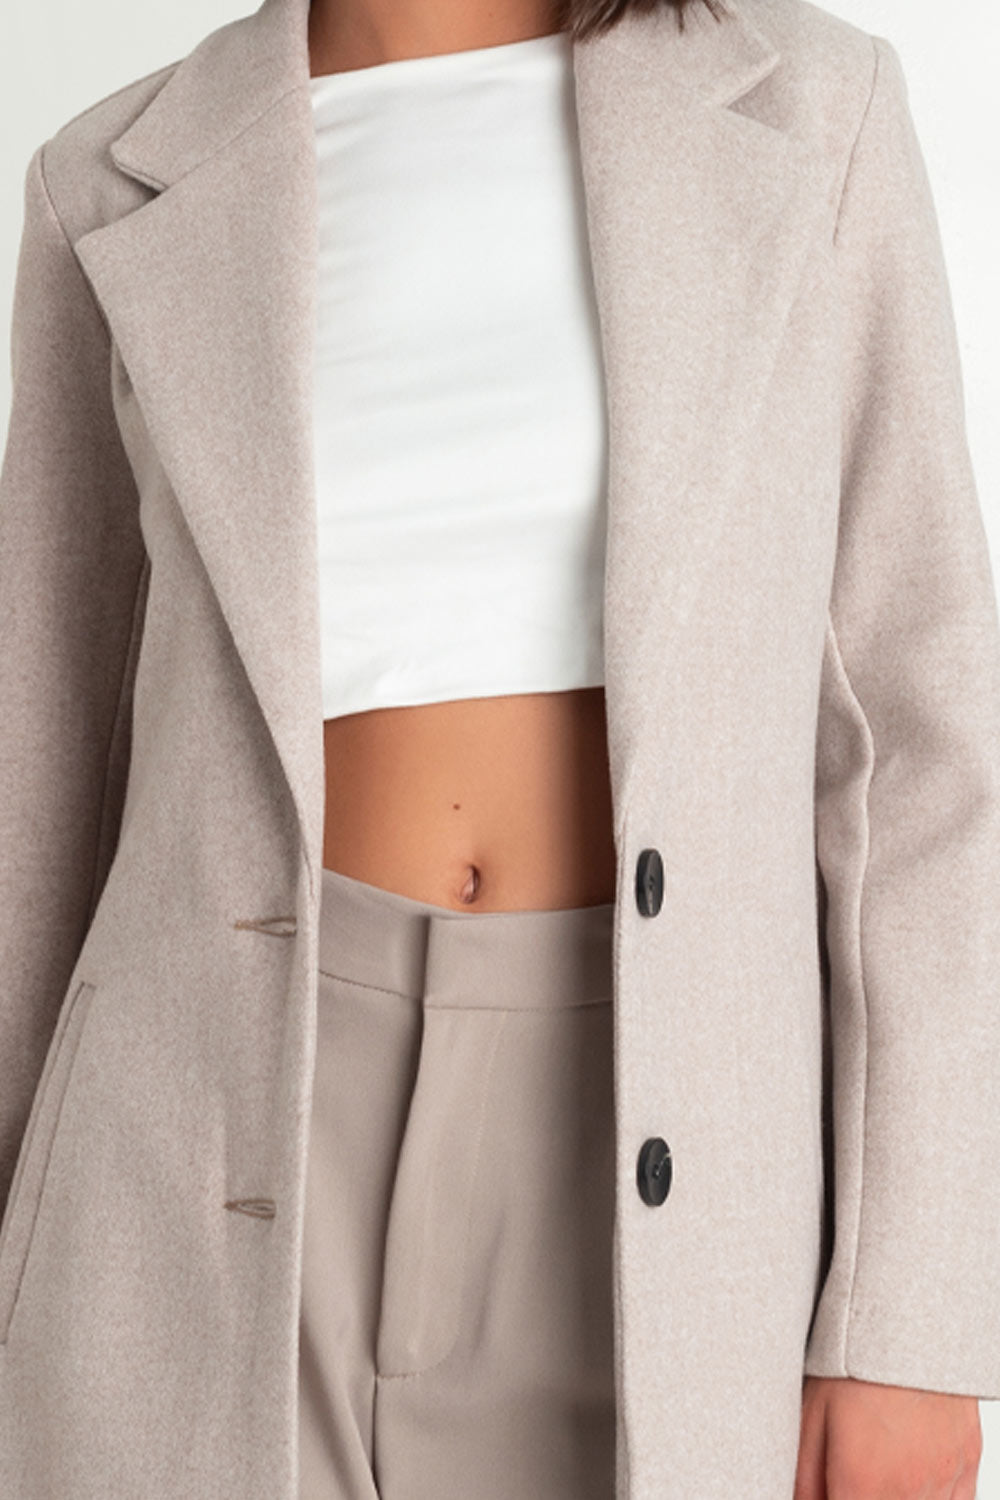 Abrigo largo de fit recto, con solapa y hombreras, manga larga, bolsillos delanteros con vivos y cierre frontal con botones en contraste.